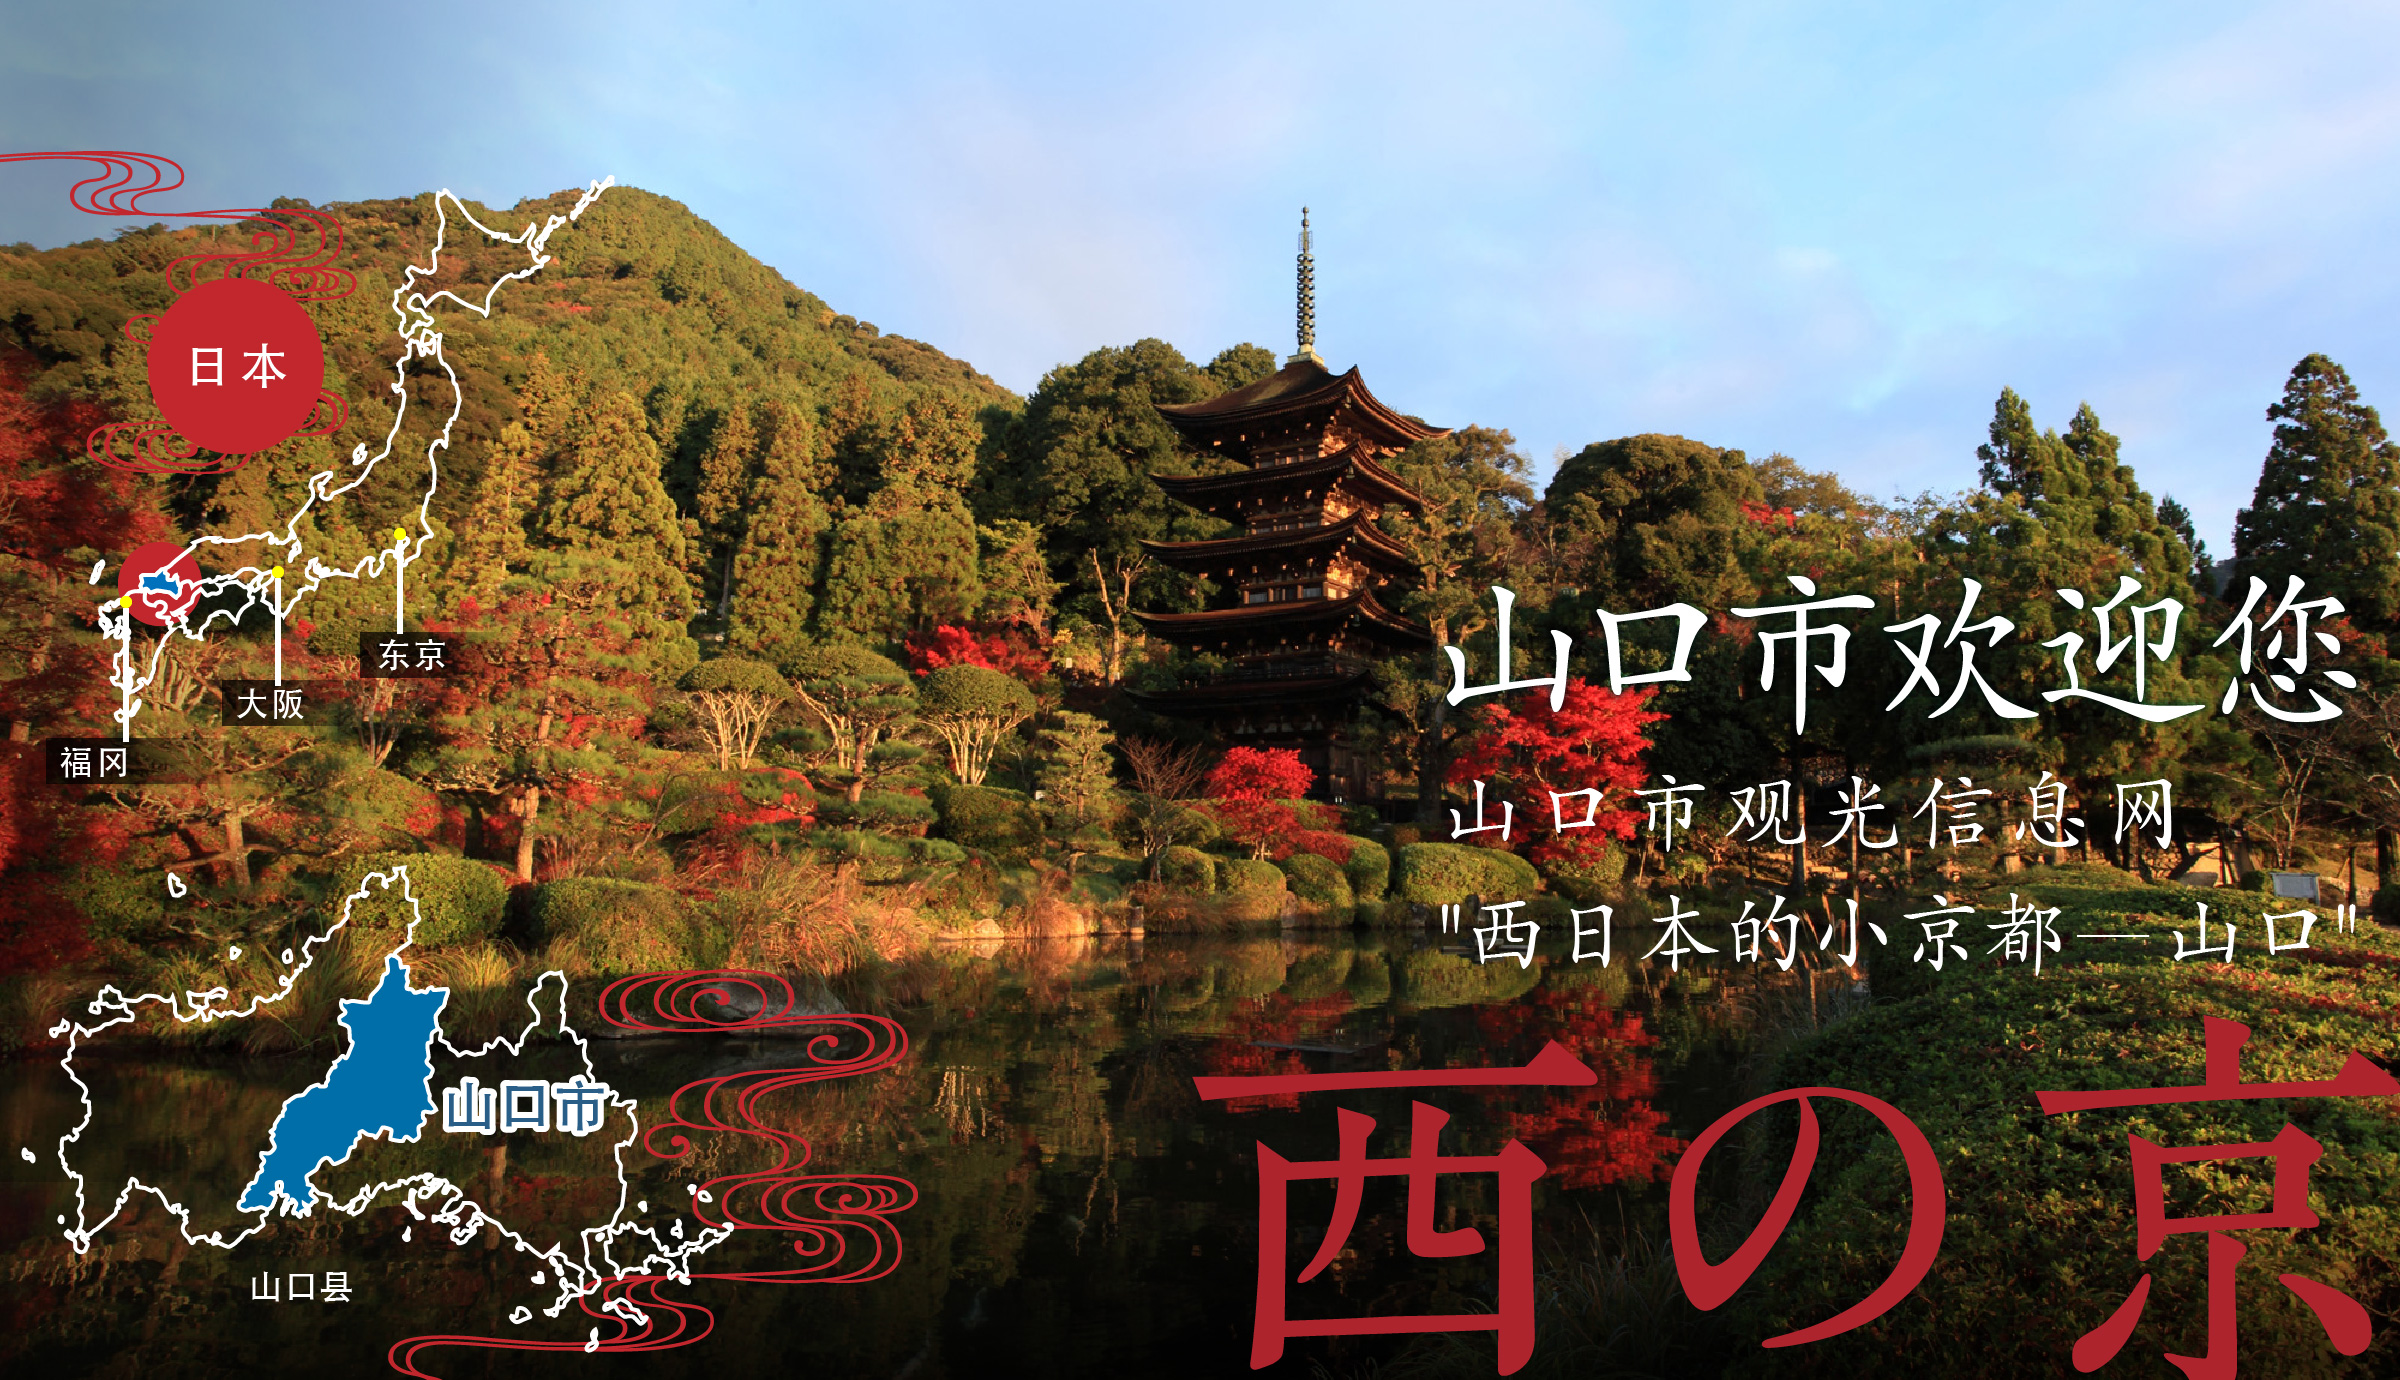 山口市欢迎您 山口市观光信息网 西日本的小京都—山口